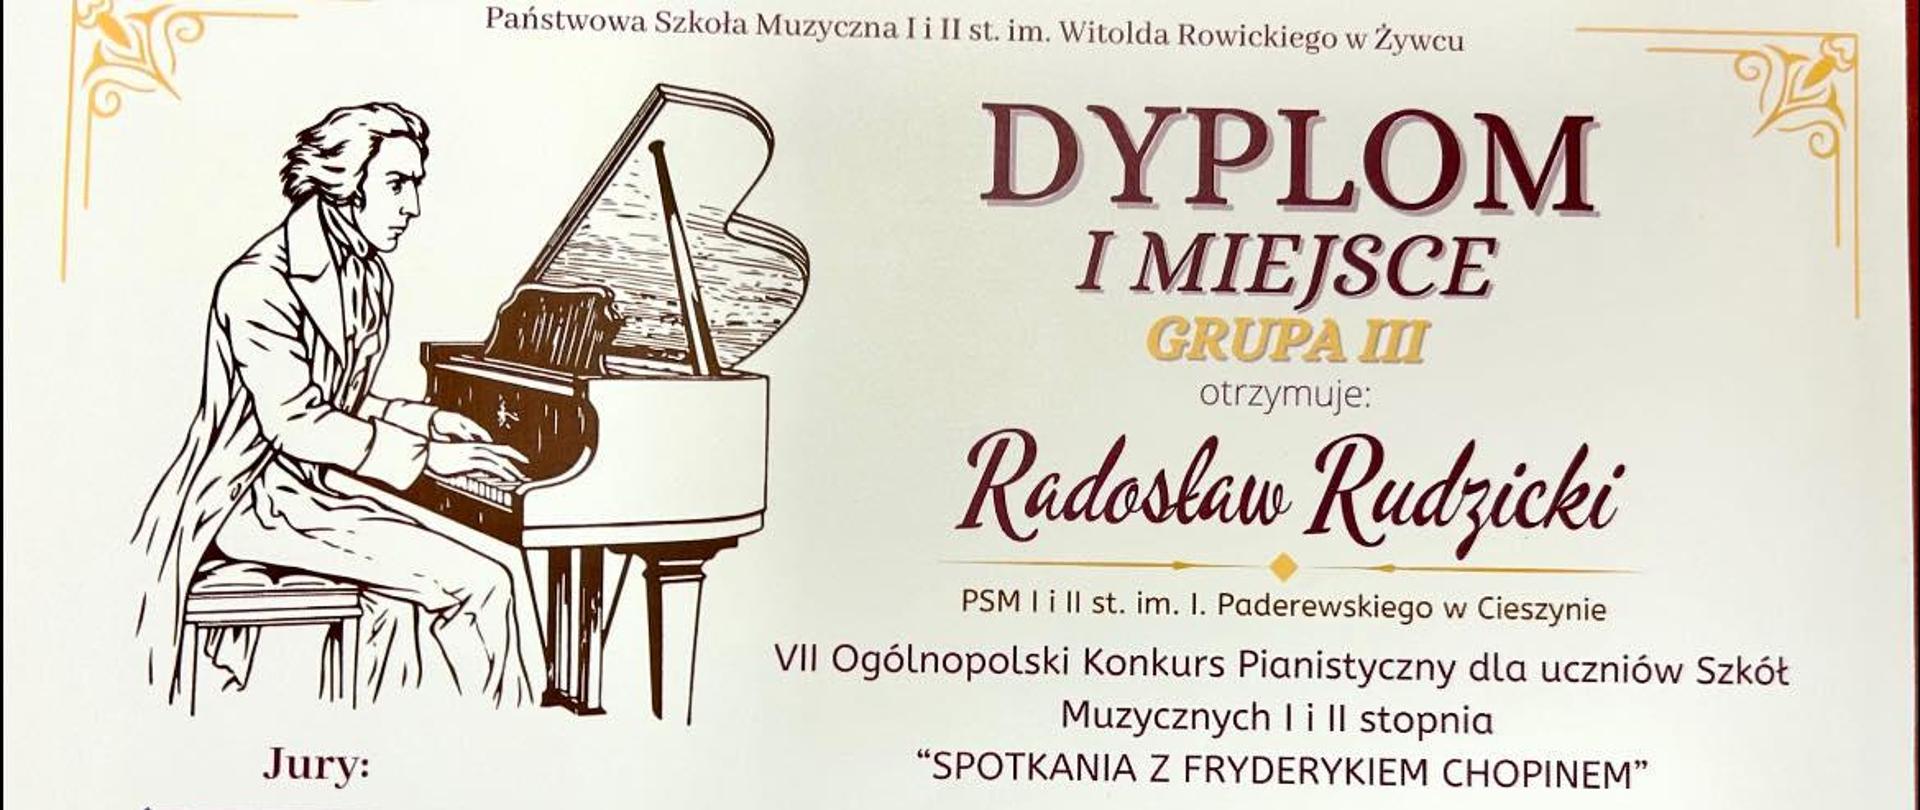 Radosław Rudzicki - dyplom